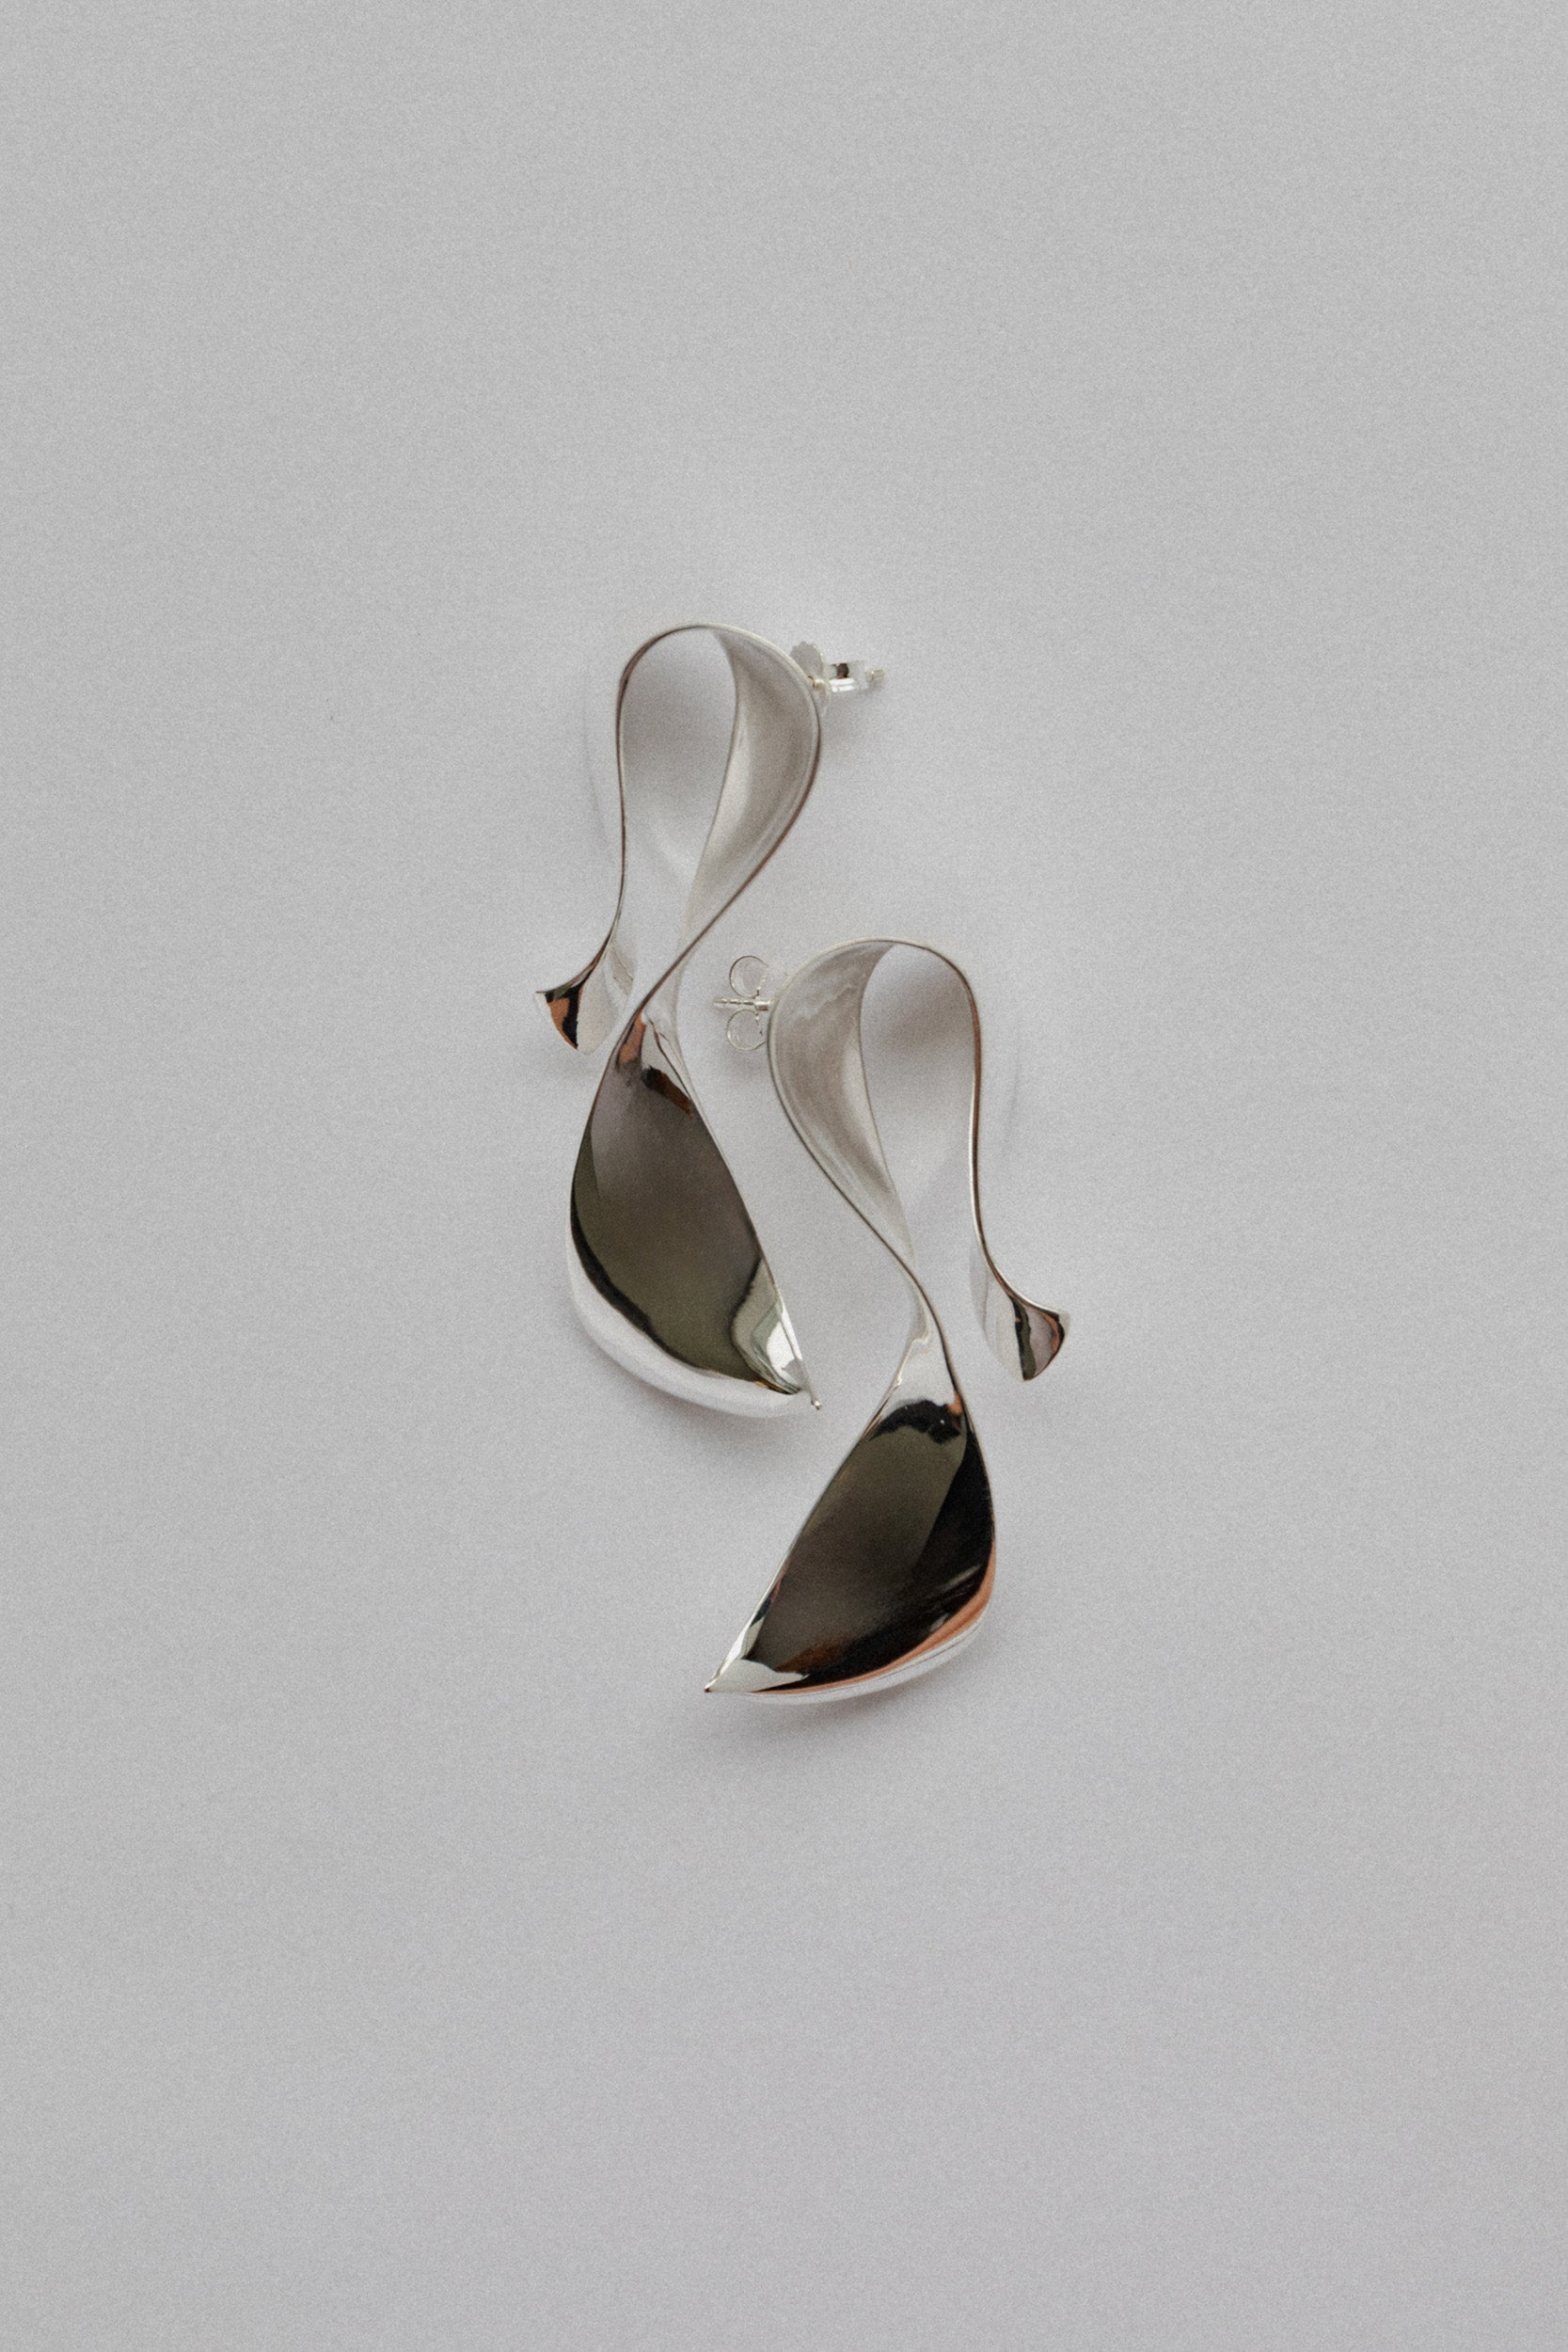 Sculpt Earrings - Silver